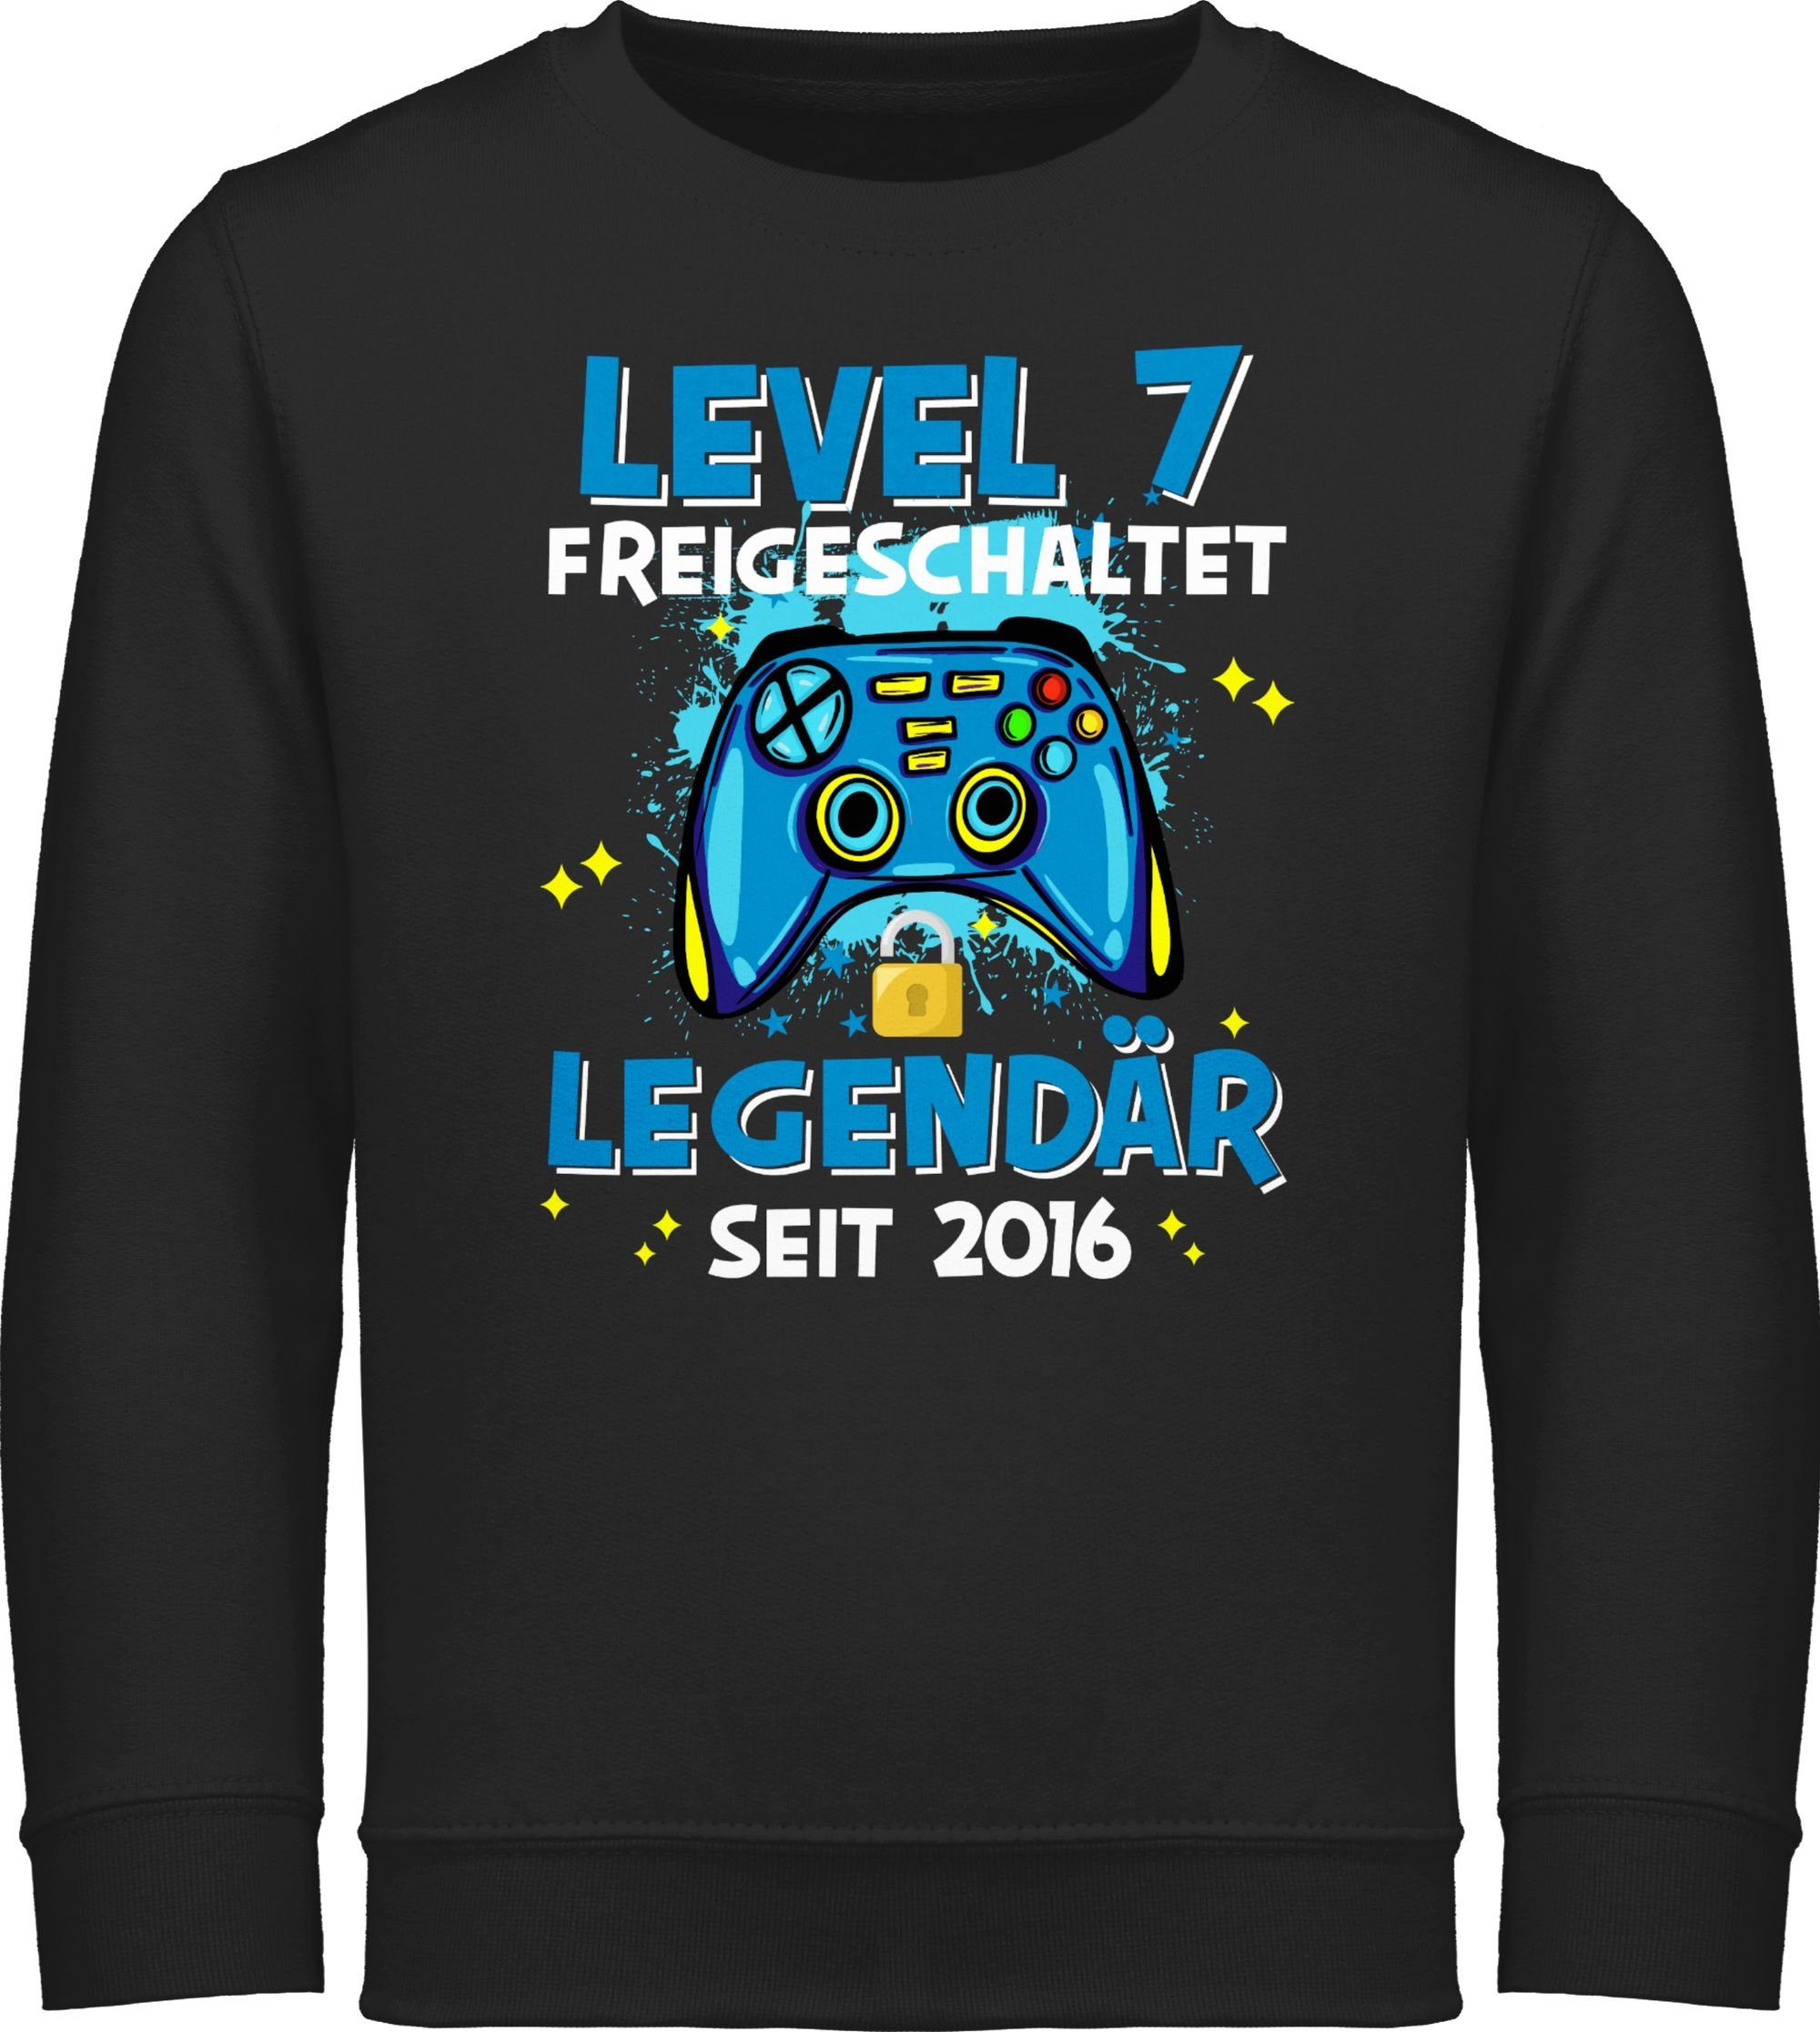 Shirtracer Sweatshirt Level 7 freigeschaltet 2016 7. Schwarz Legendär Geburtstag seit 1